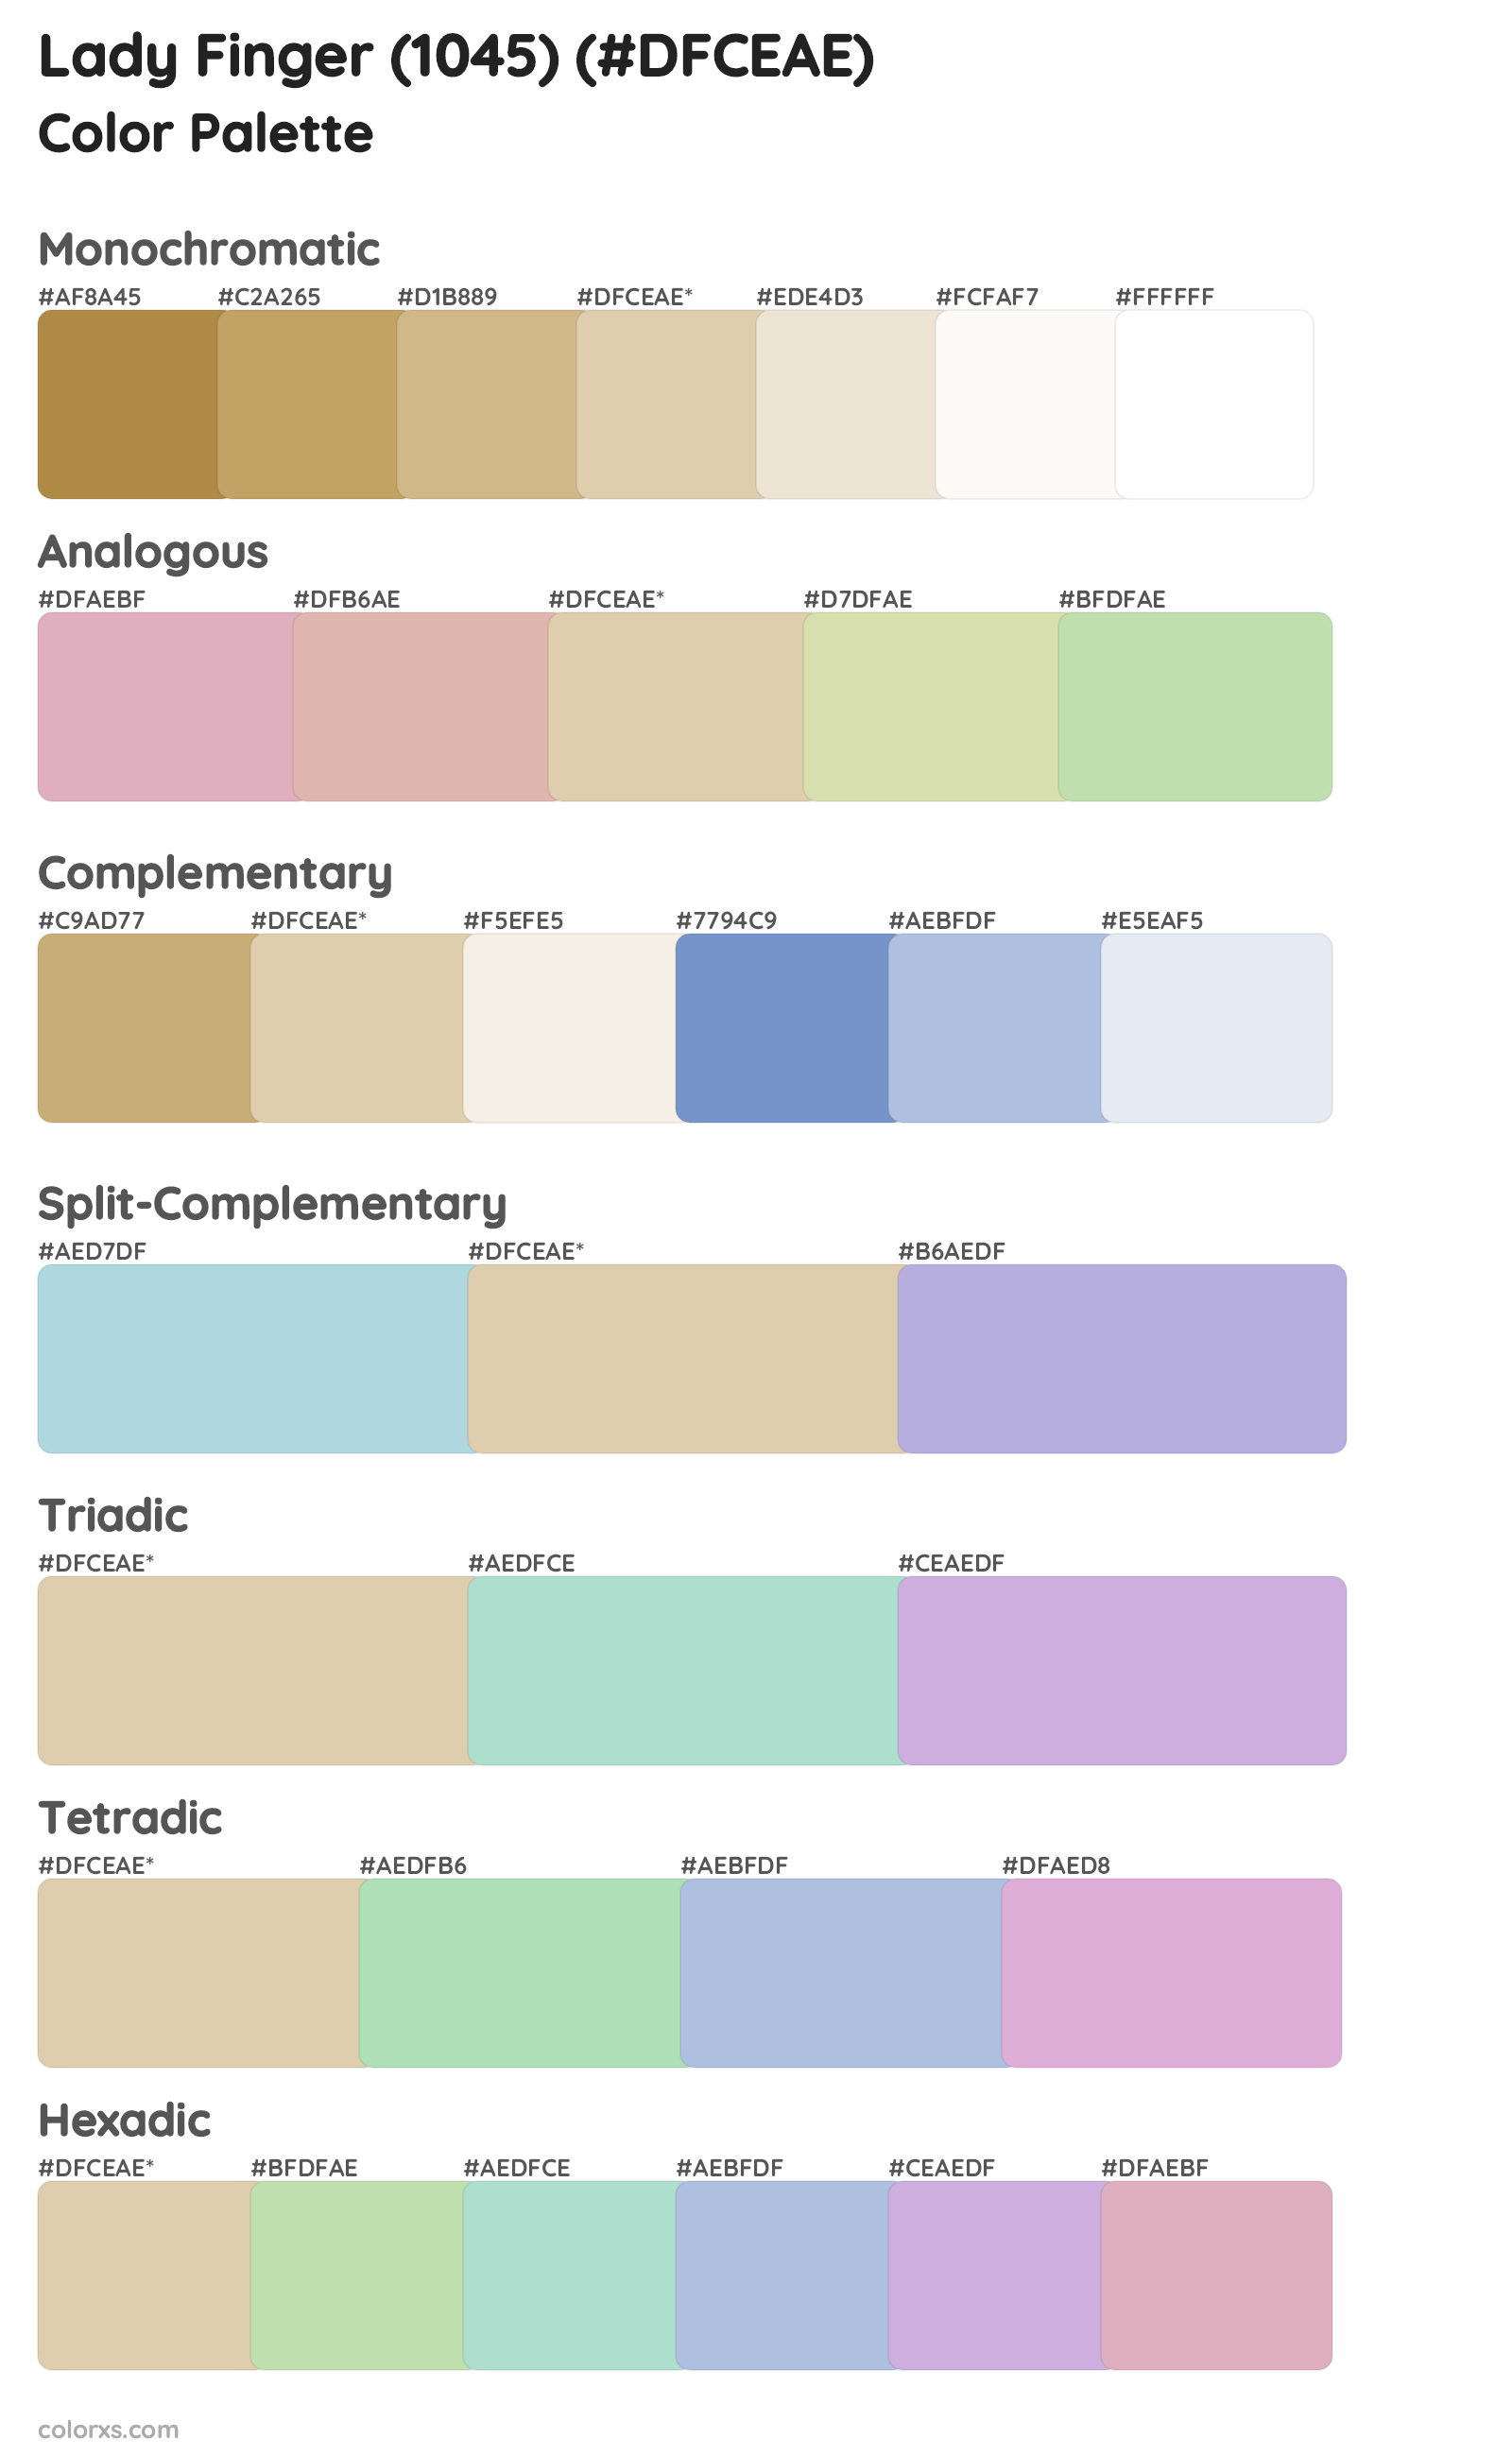 Lady Finger (1045) Color Scheme Palettes